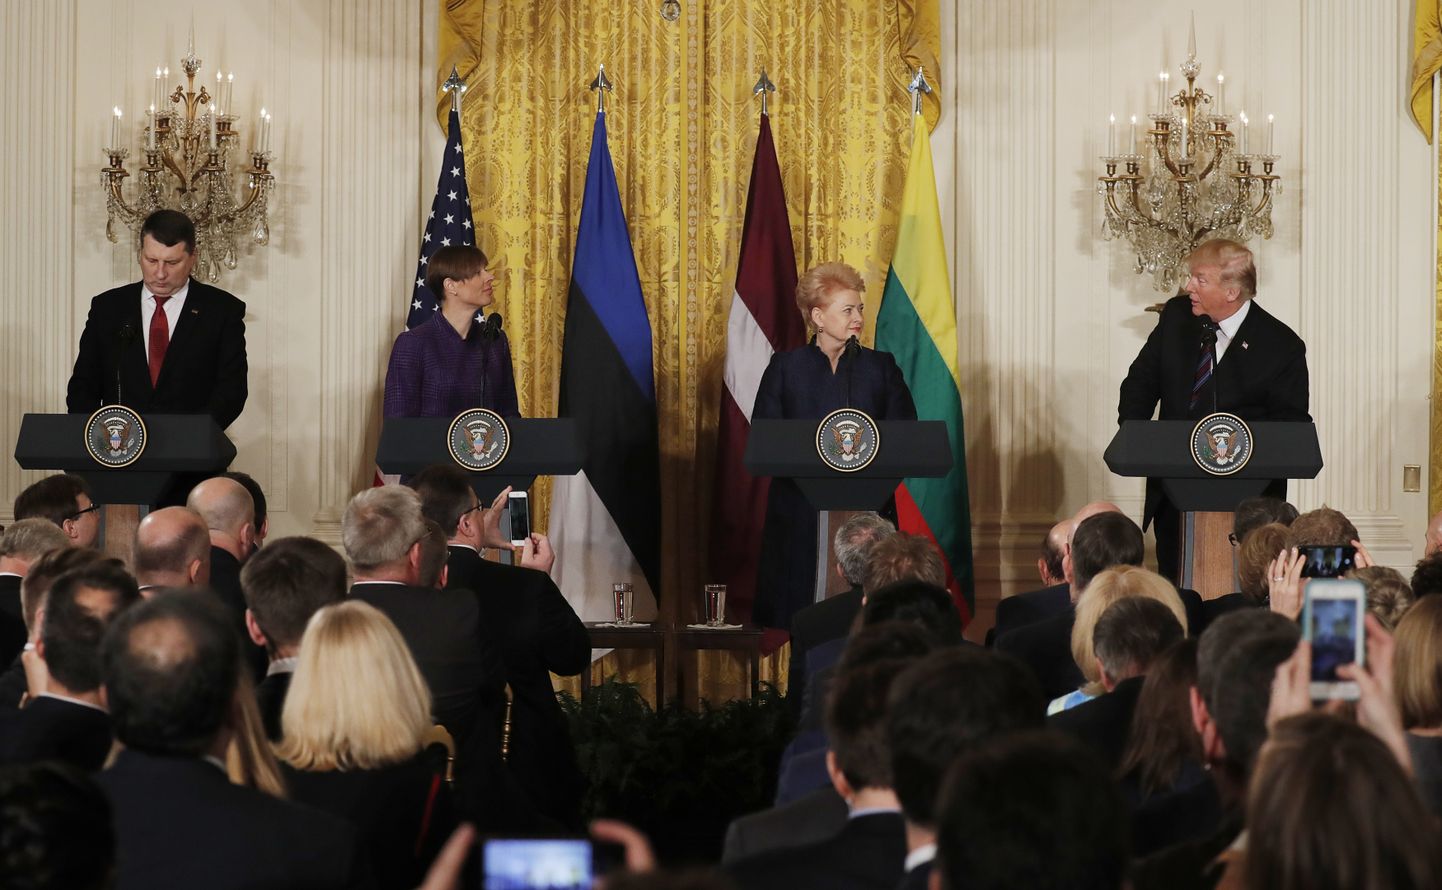 Läti president Raimonds Vējonis, Eesti president Kersti Kaljulaid ja Leedu president Dalia Grybauskaite koos Ameerika Ühendriikide presidendi Donald Trumpiga pressikonverentsil Valges Majas Washingtonis selle aasta aprillis.